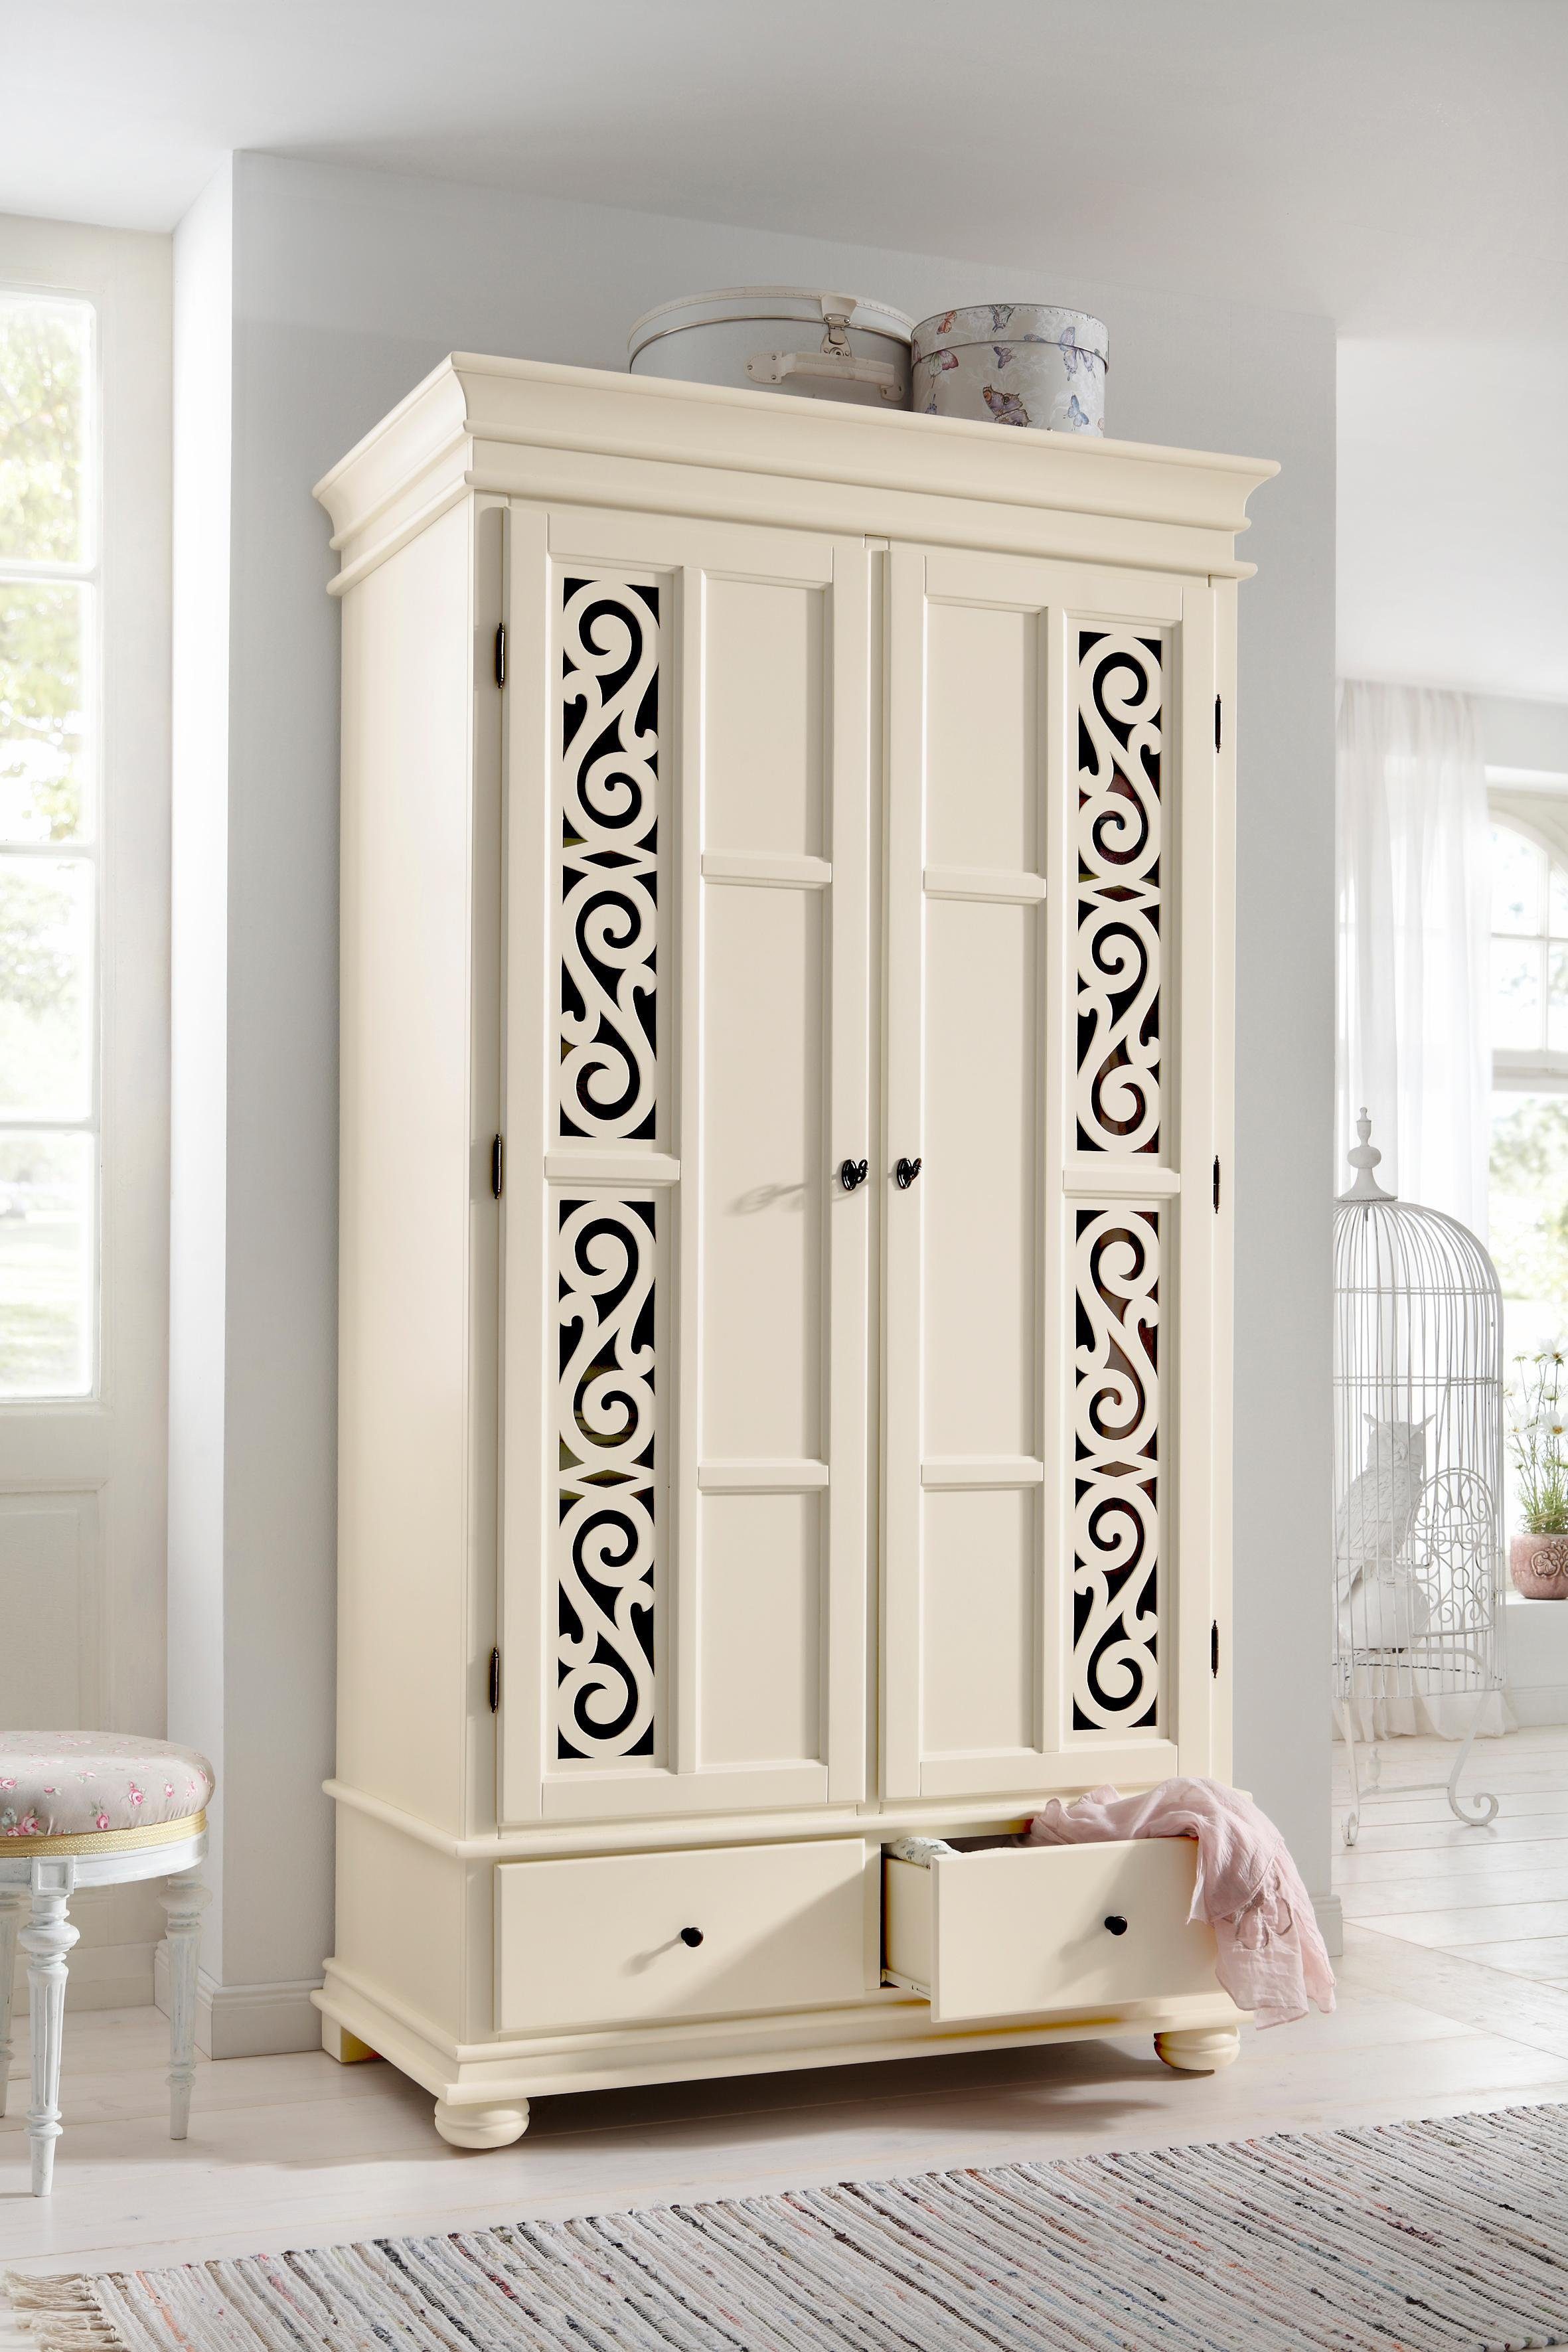 Premium collection by Home affaire Drehtürenschrank »Arabeske« aus  teilmassivem Holz mit schönen Ornamenten auf den Türfronten online kaufen |  OTTO